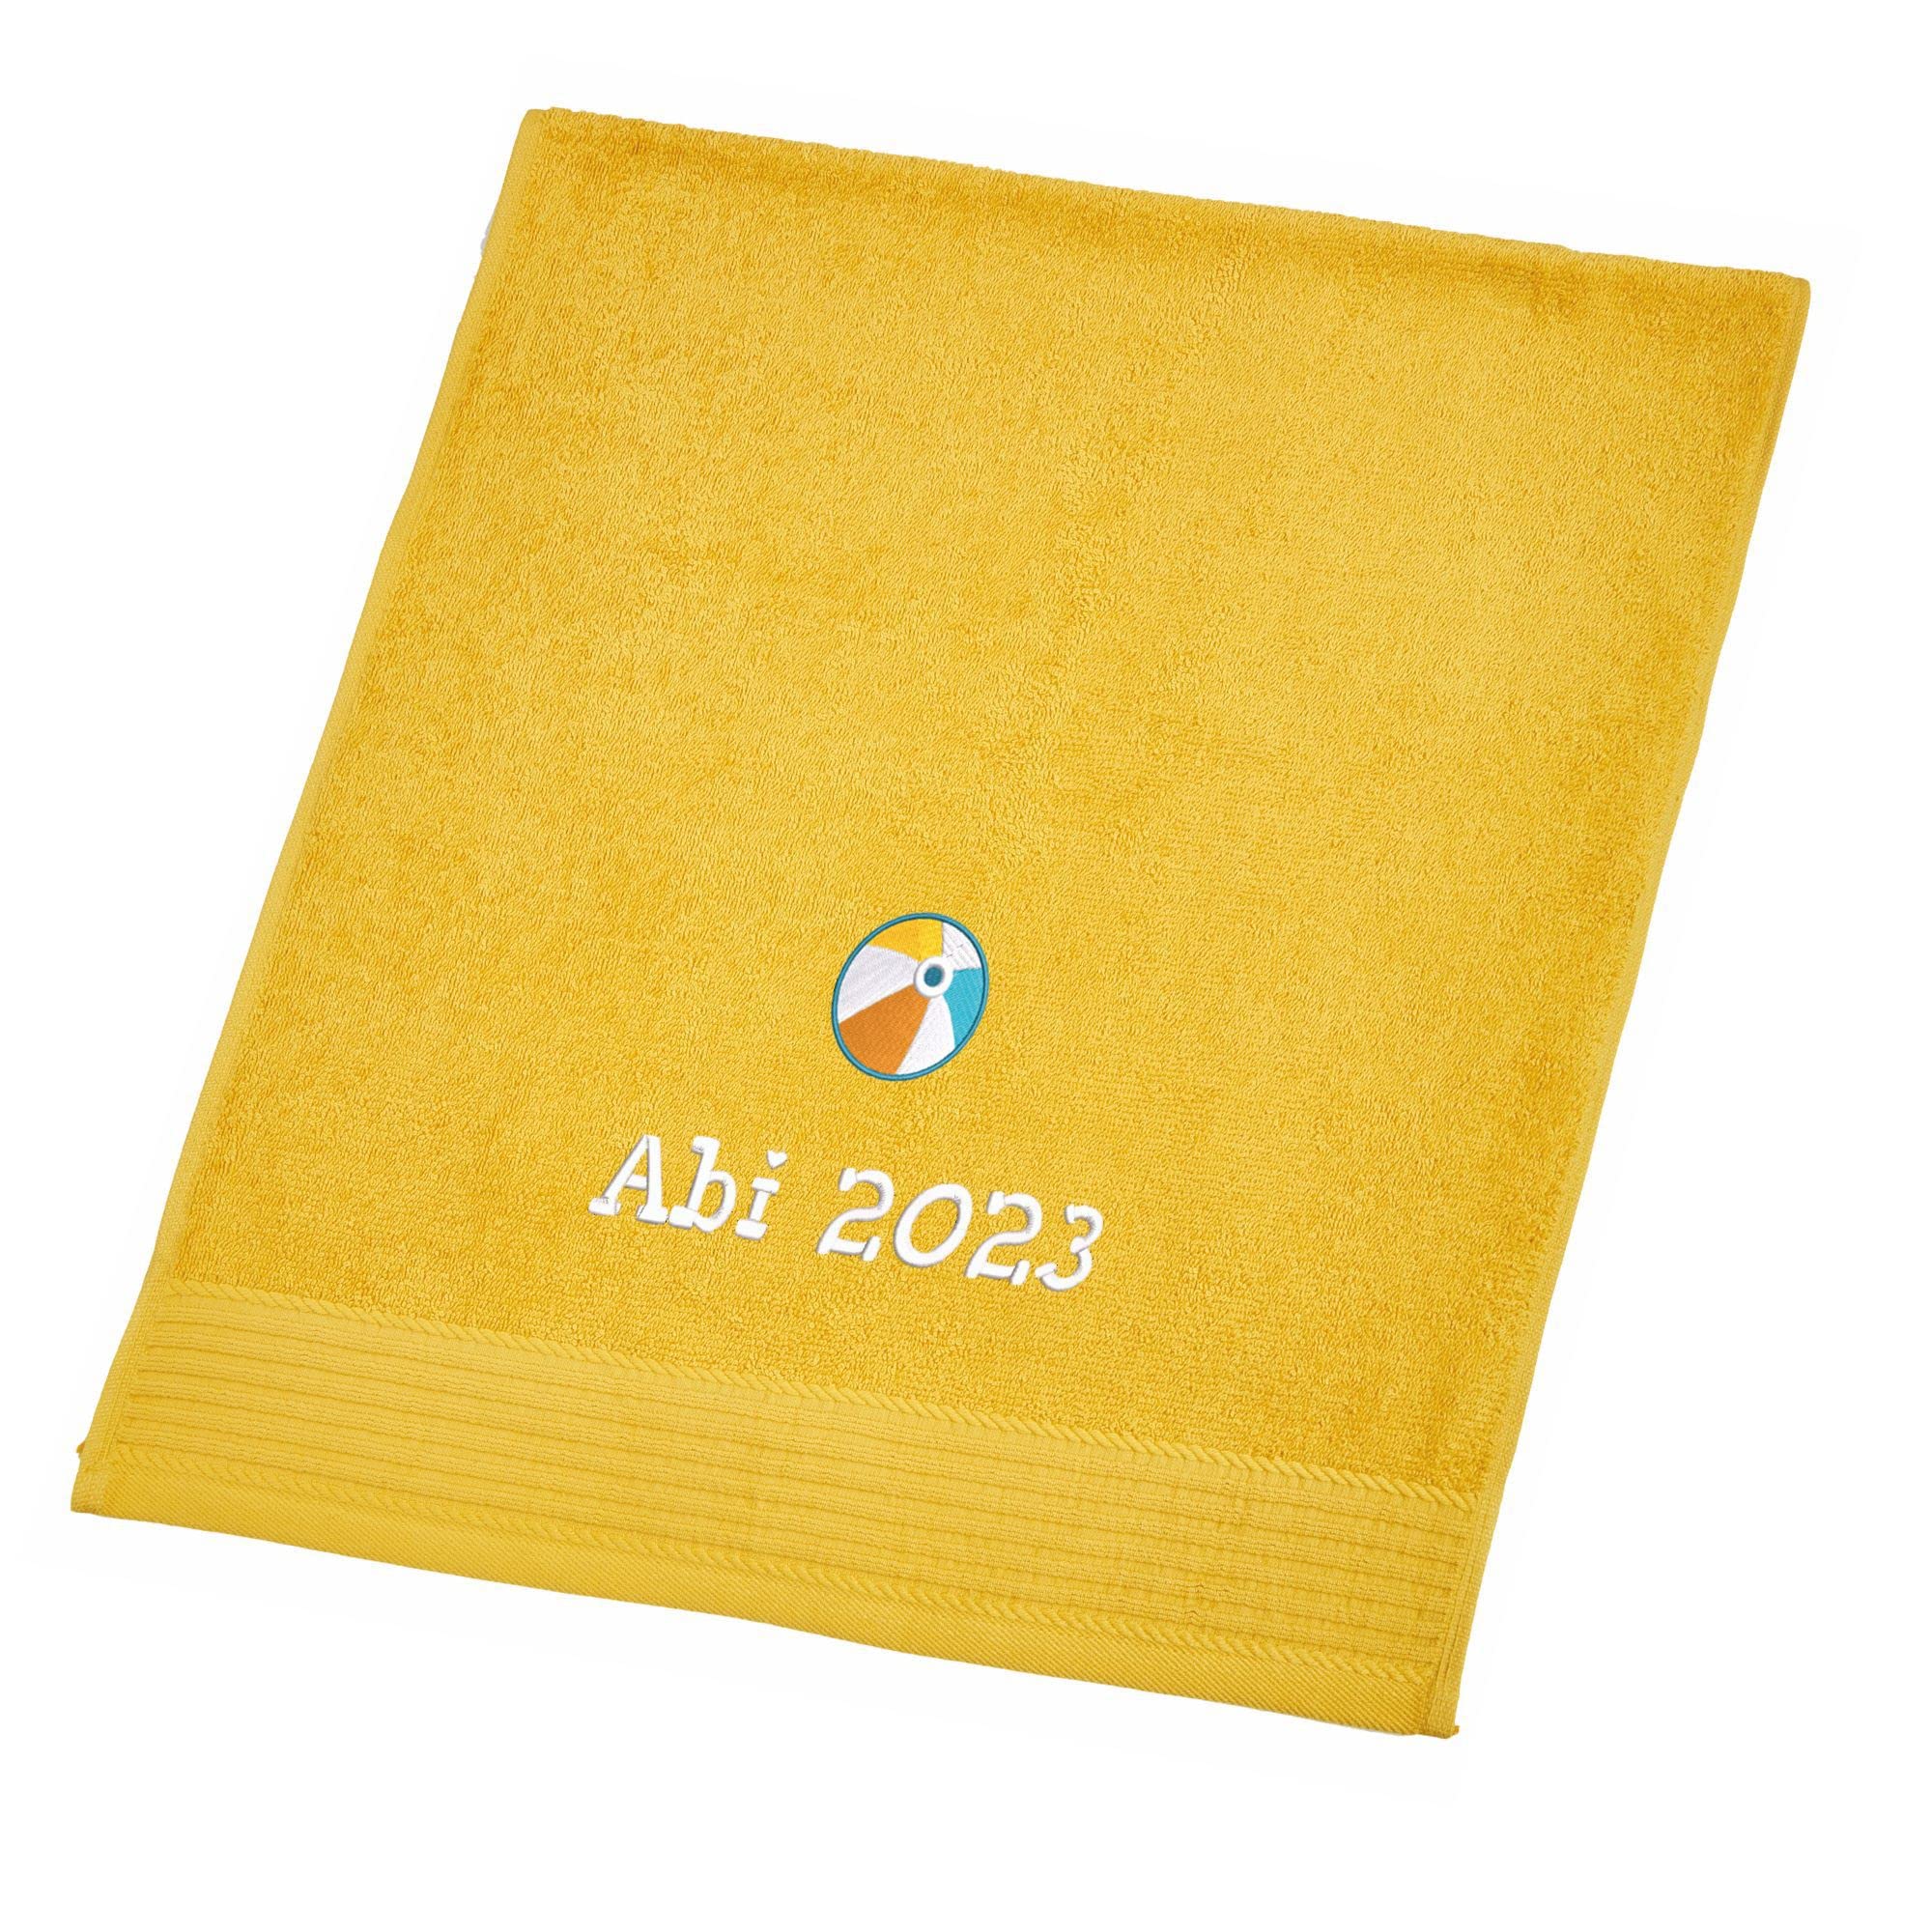 Wolimbo Duschhandtuch Bestickt mit Namen und Motiv - 70x140 cm - gelb - weiches Duschtuch personalisiert - Geschenk